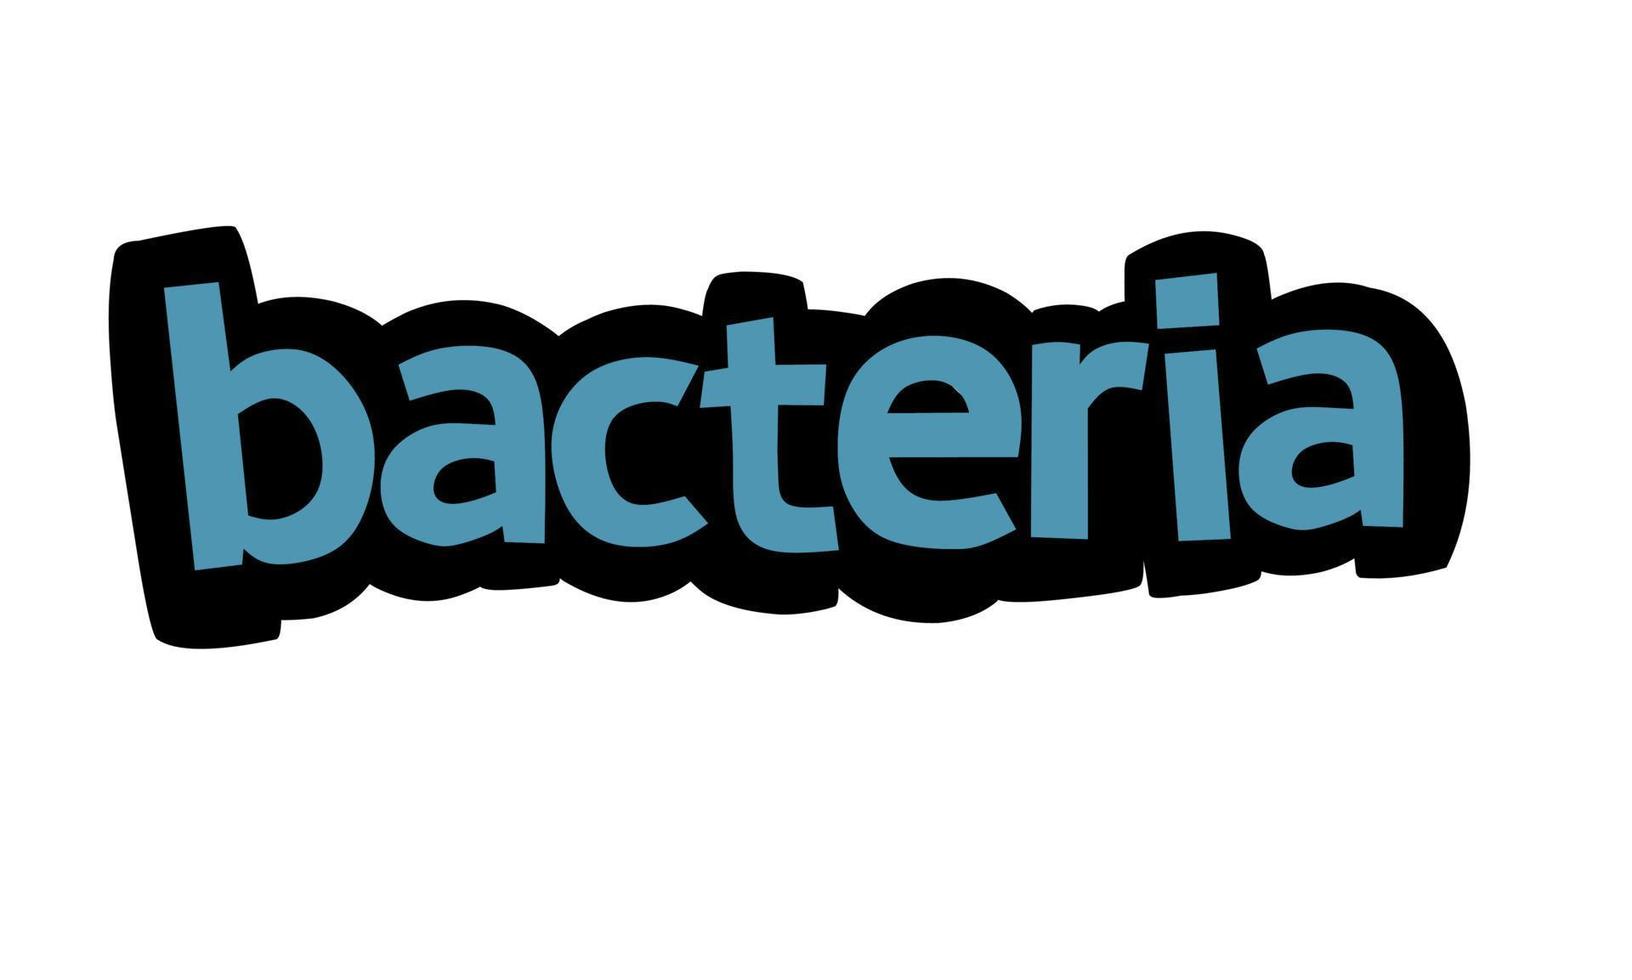 conception de vecteur d'écriture de bactéries sur fond blanc